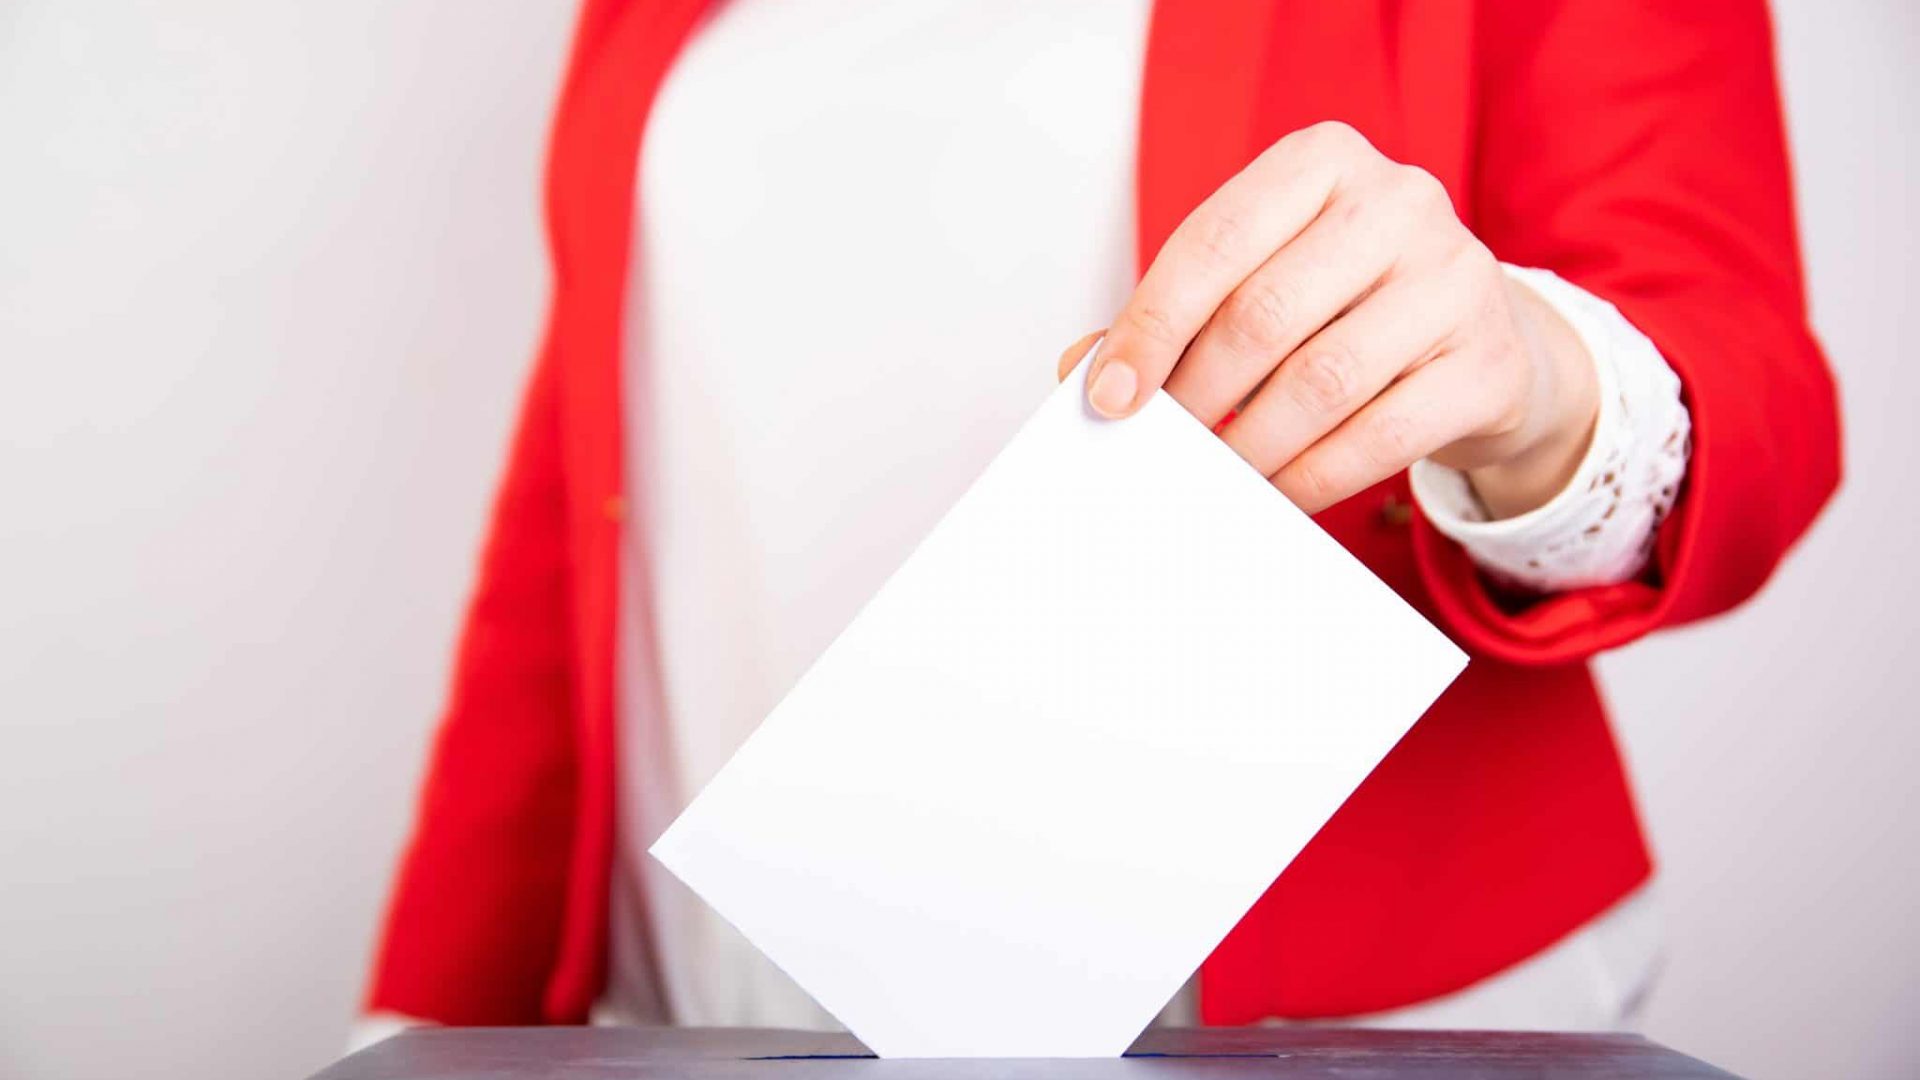 woman-votes-on-election-day-2021-08-27-12-41-45-utc-2048x1365